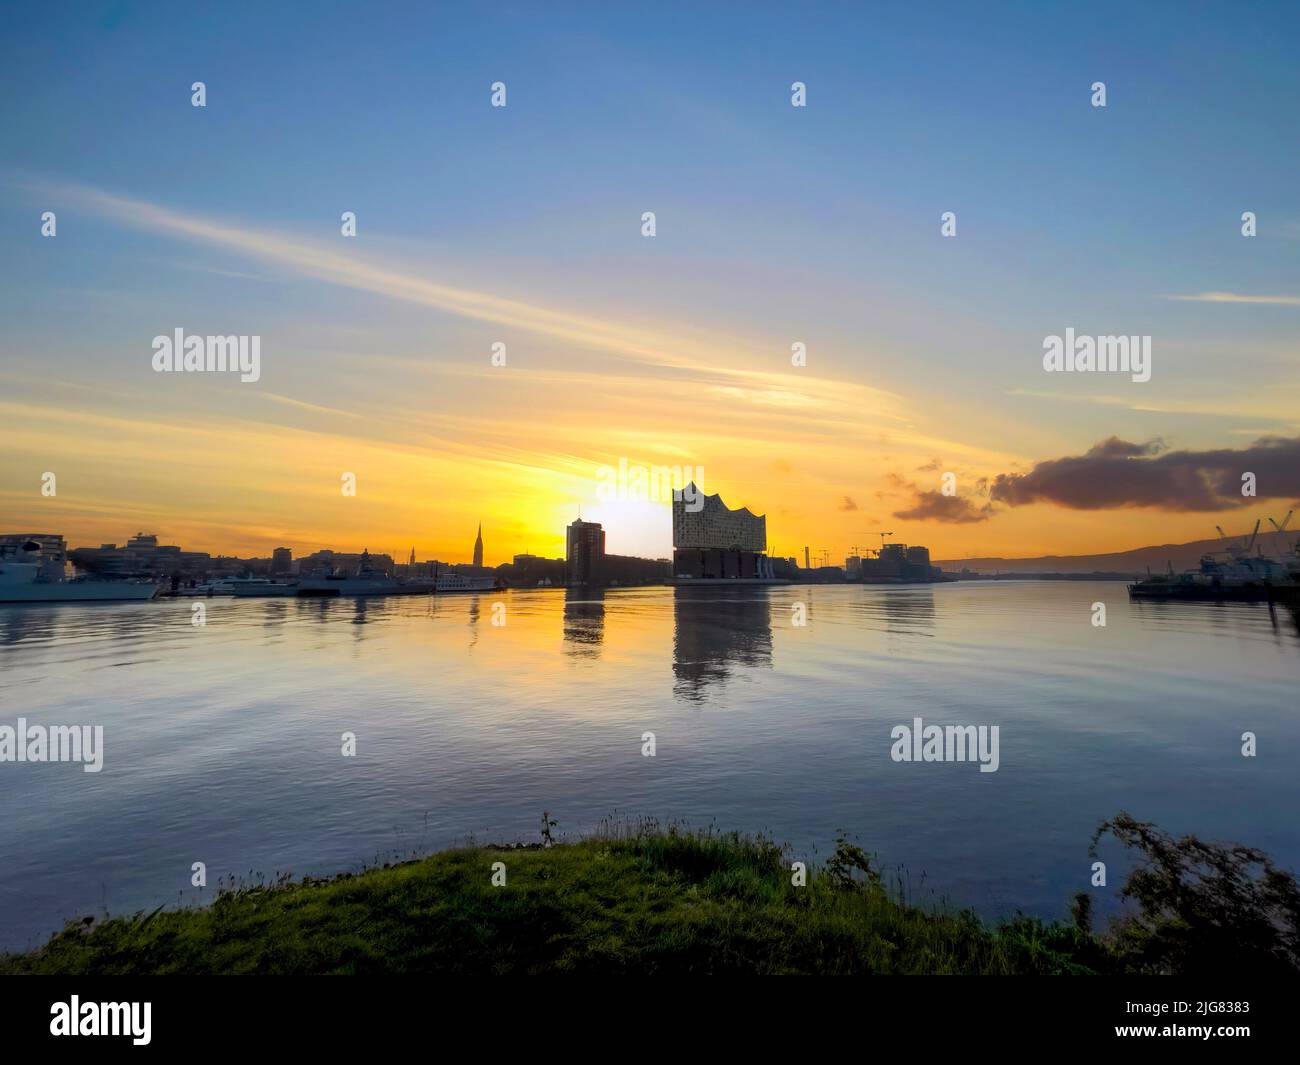 Sunset, HafenCity, Hamburg, Germany, Europe Stock Photo